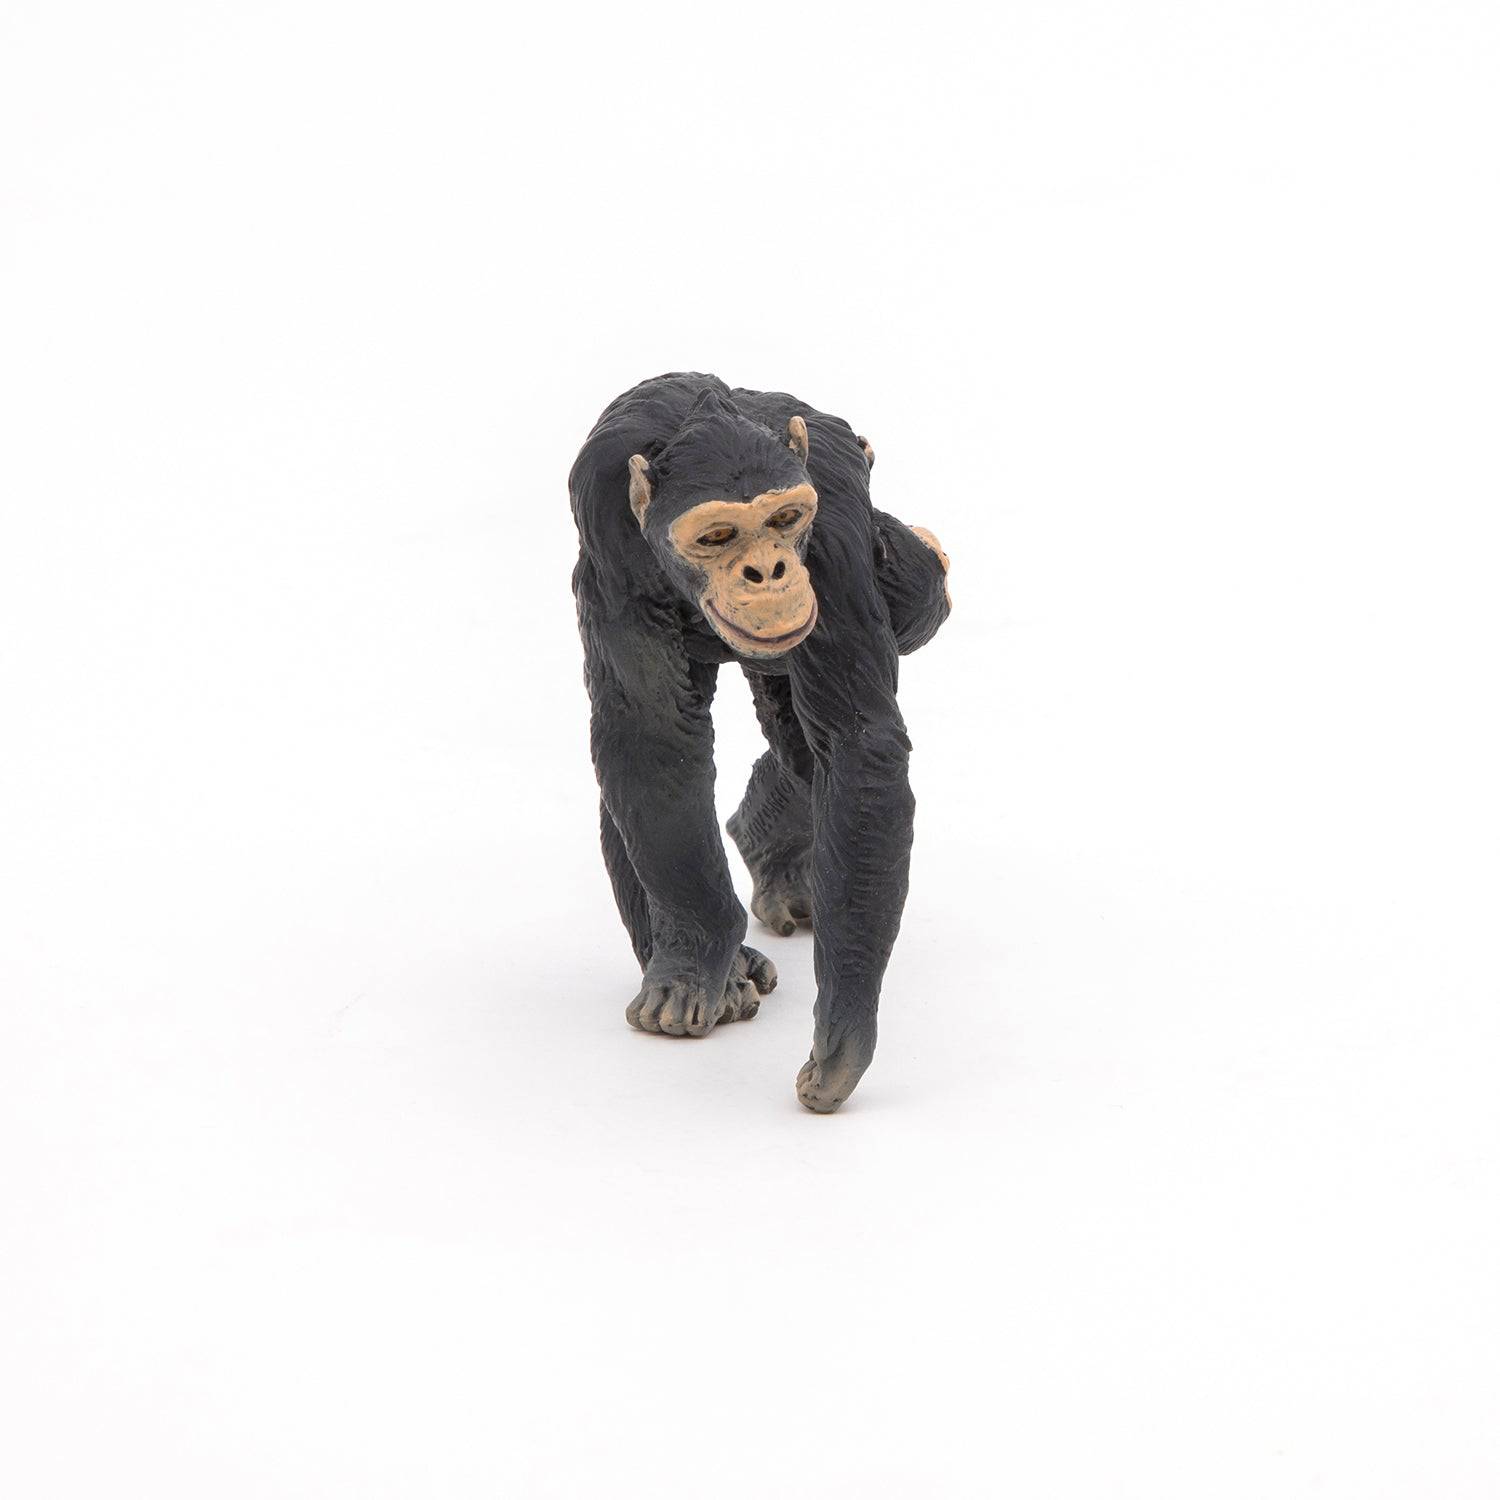 Figurine maman chimpanzé avec son bébé Papo France - Maison Continuum